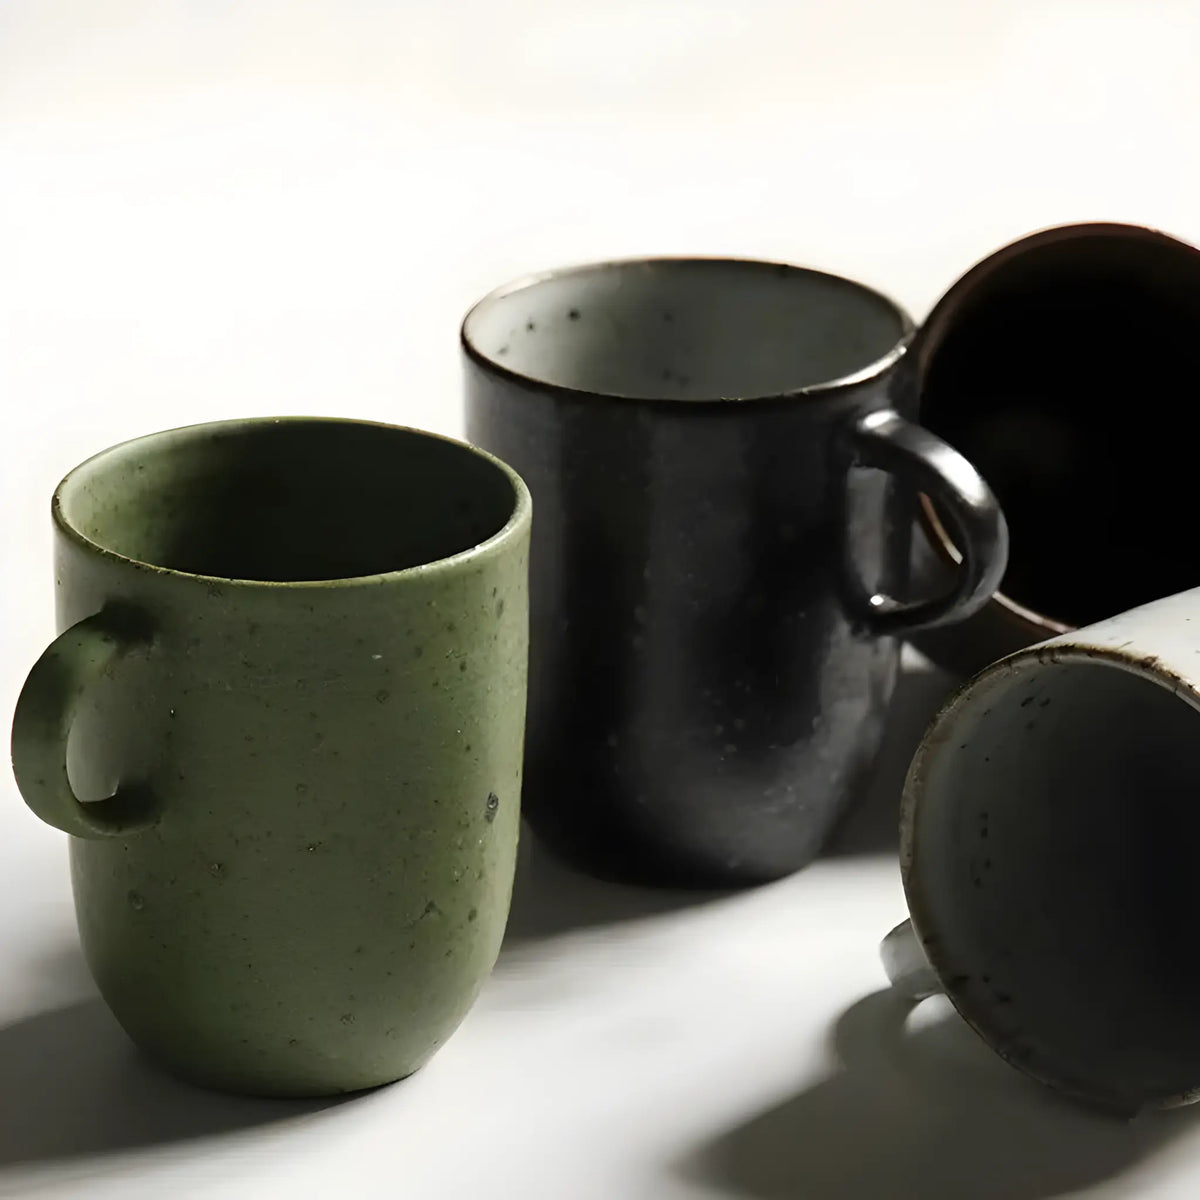 Serres Handmade Stoneware Coffee Mug 8 Oz - Macchiaco